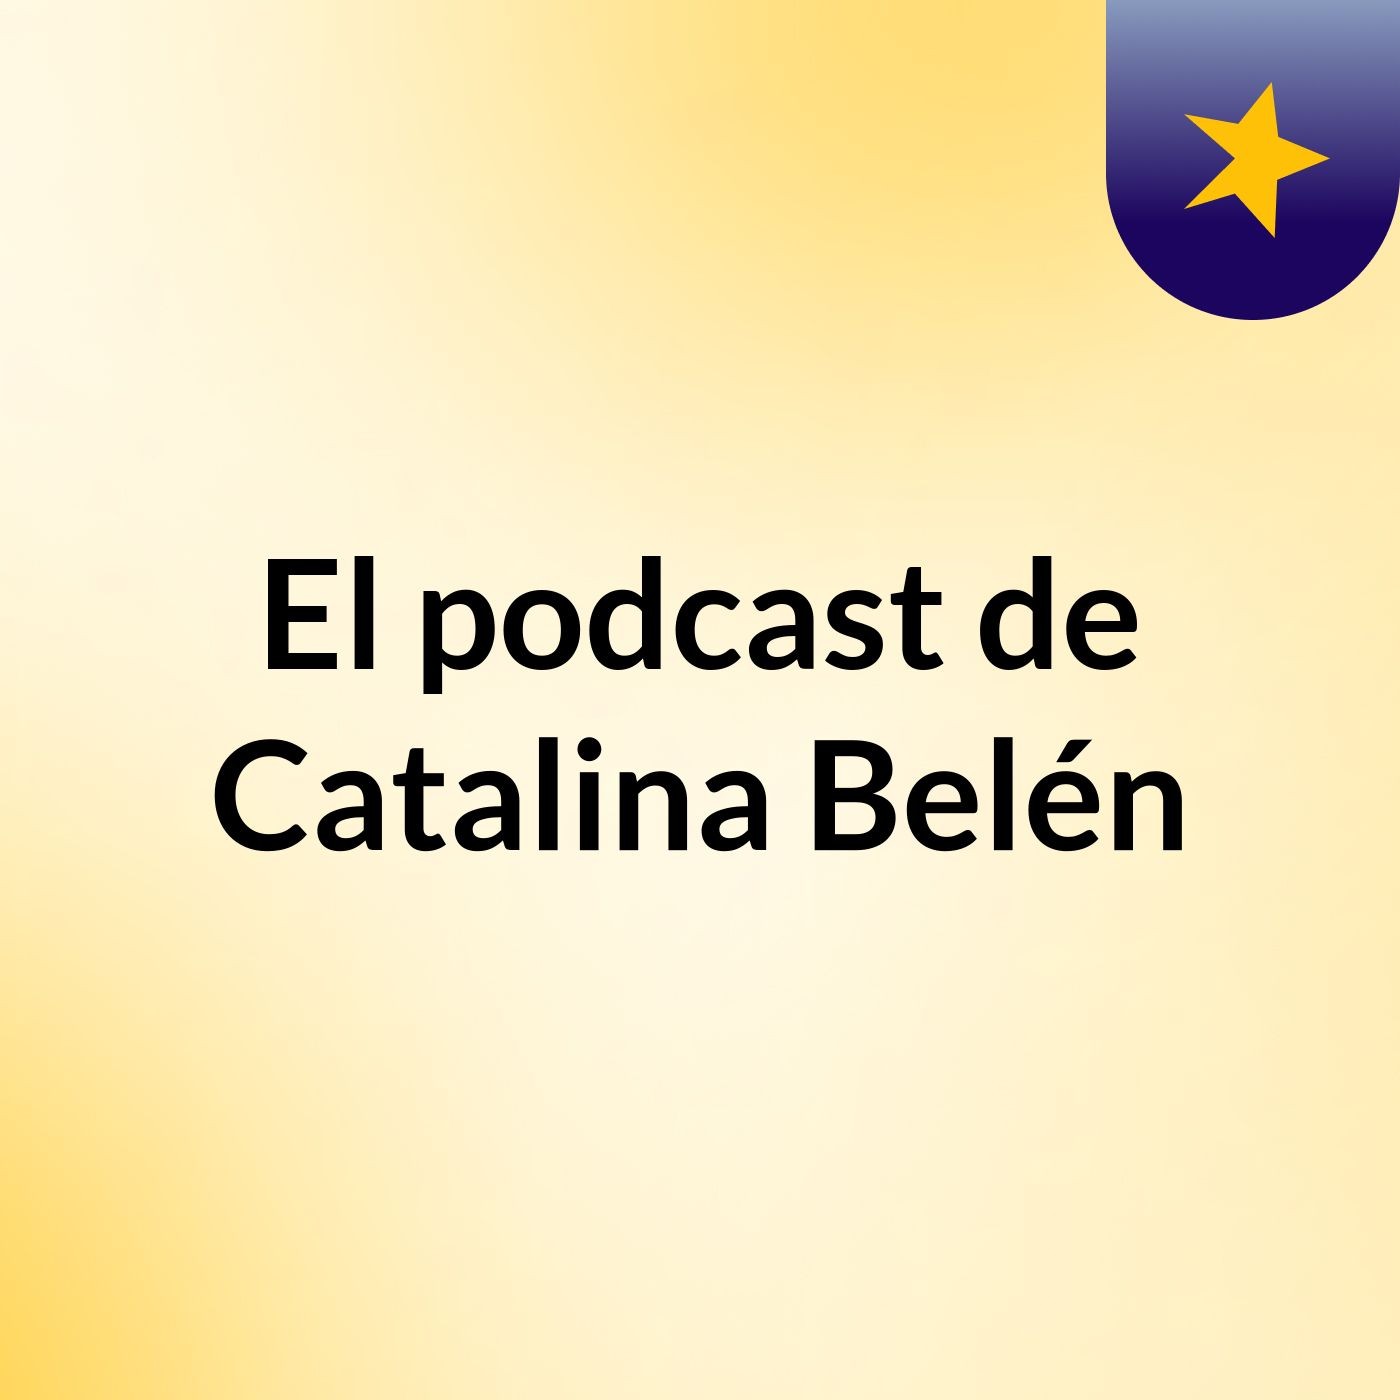 Episodio 14 - El podcast de Catalina Belén